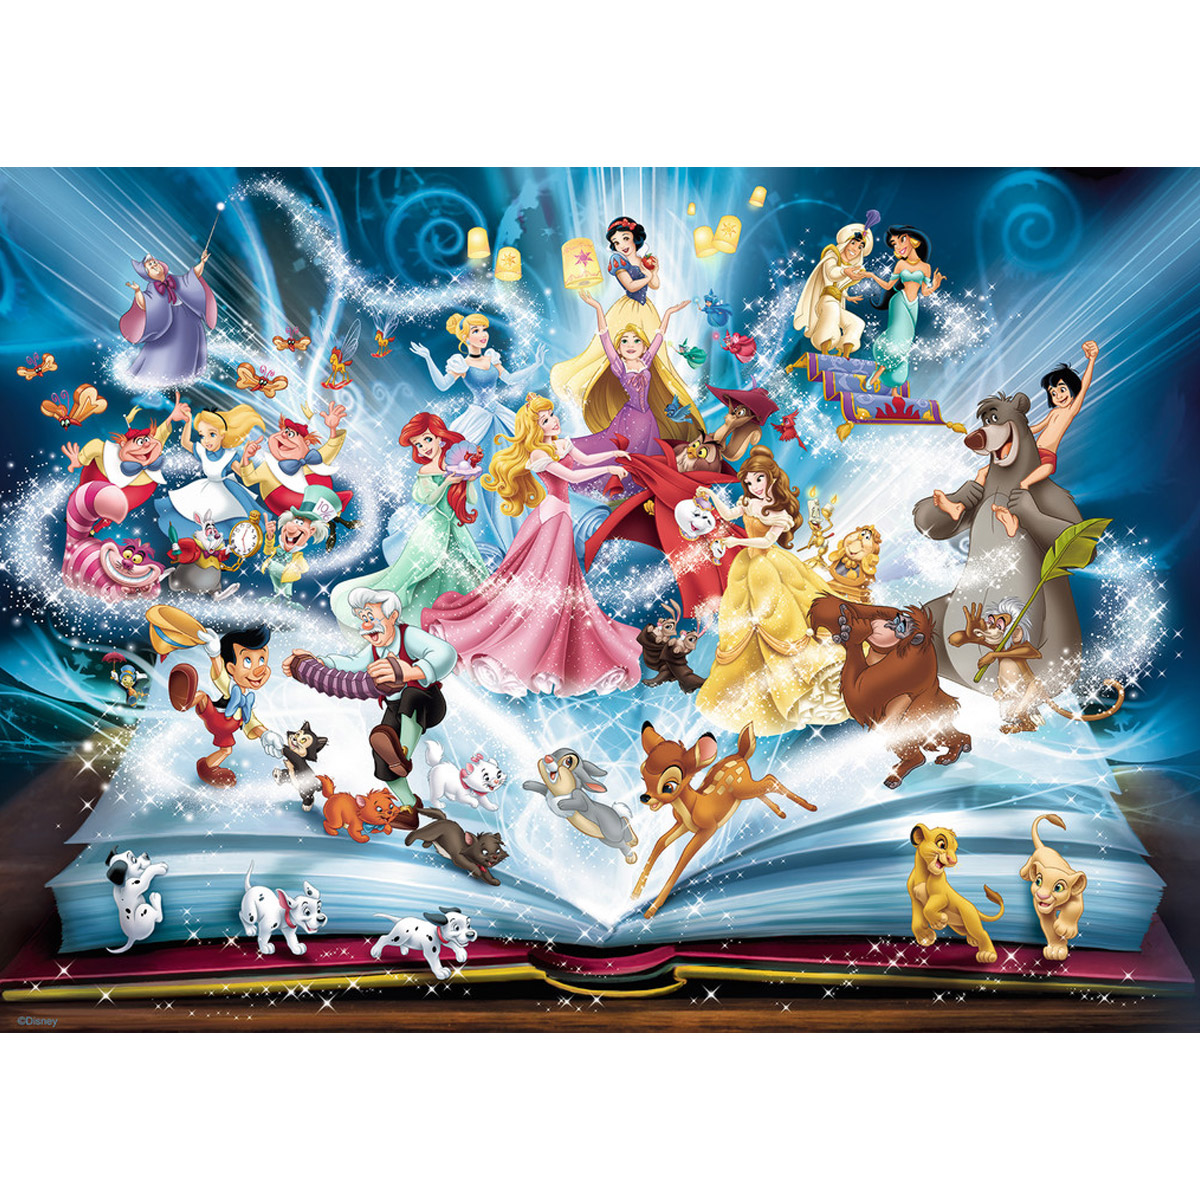 Le livre Disney - Le monde magique de Disney